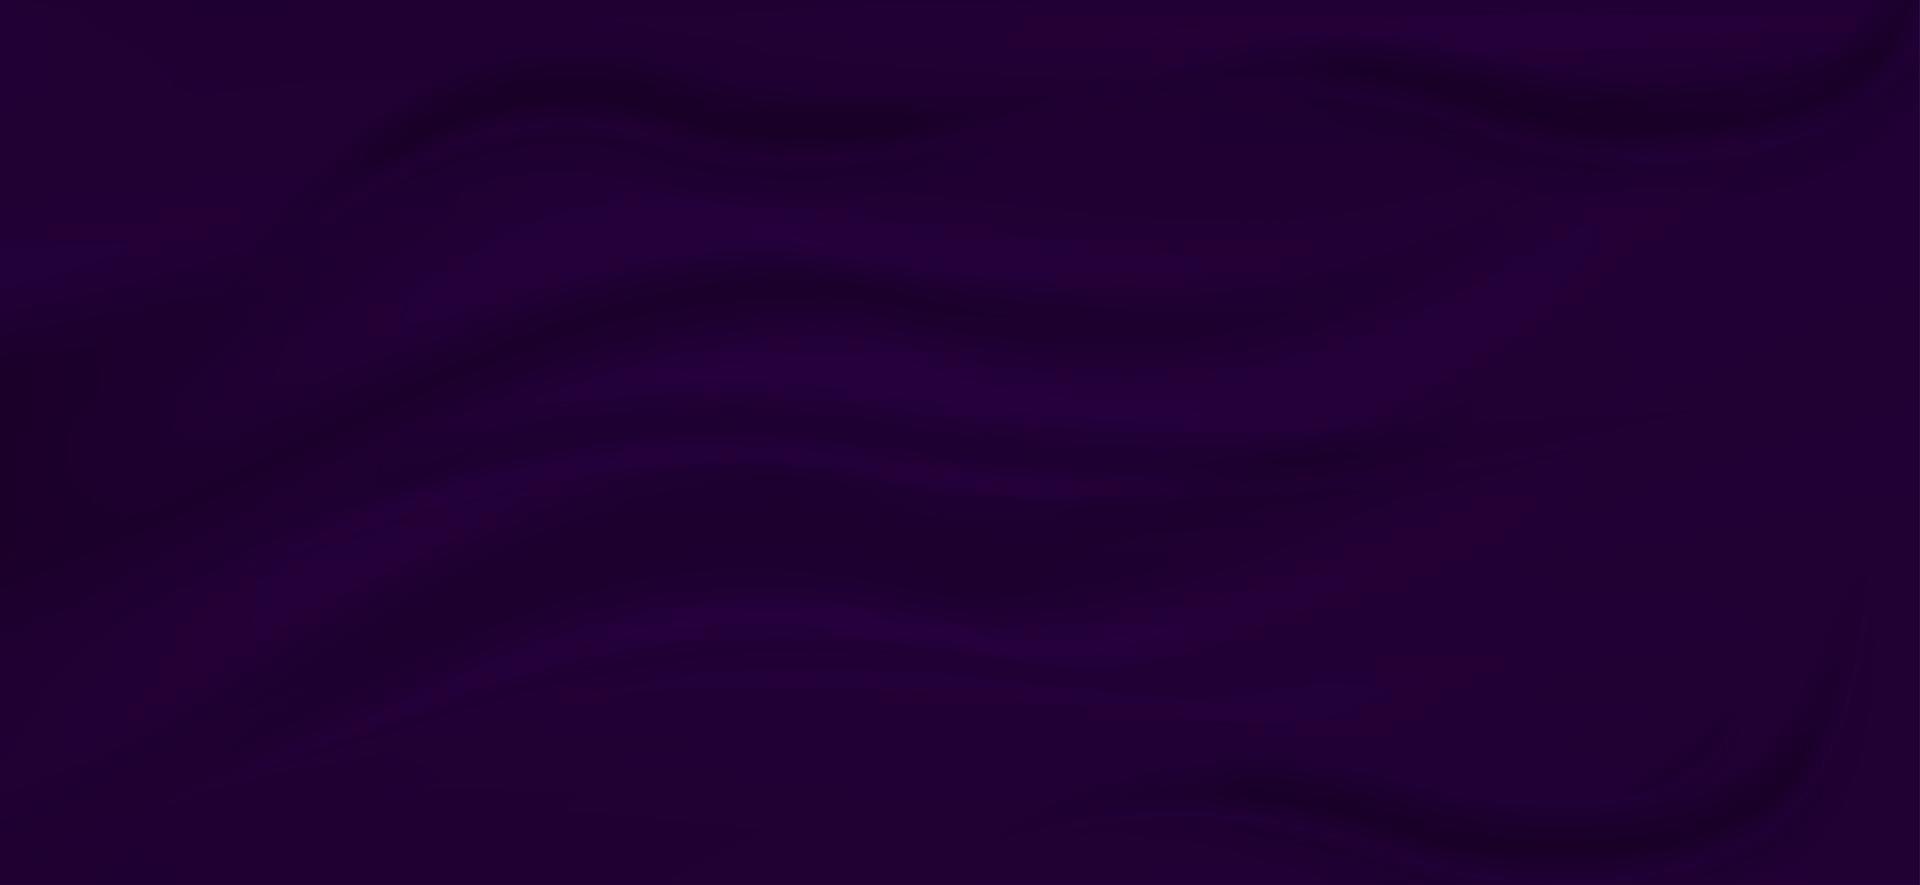 realistischer dunkelvioletter seidensatin-stoffhintergrund. Vektor-Illustration vektor